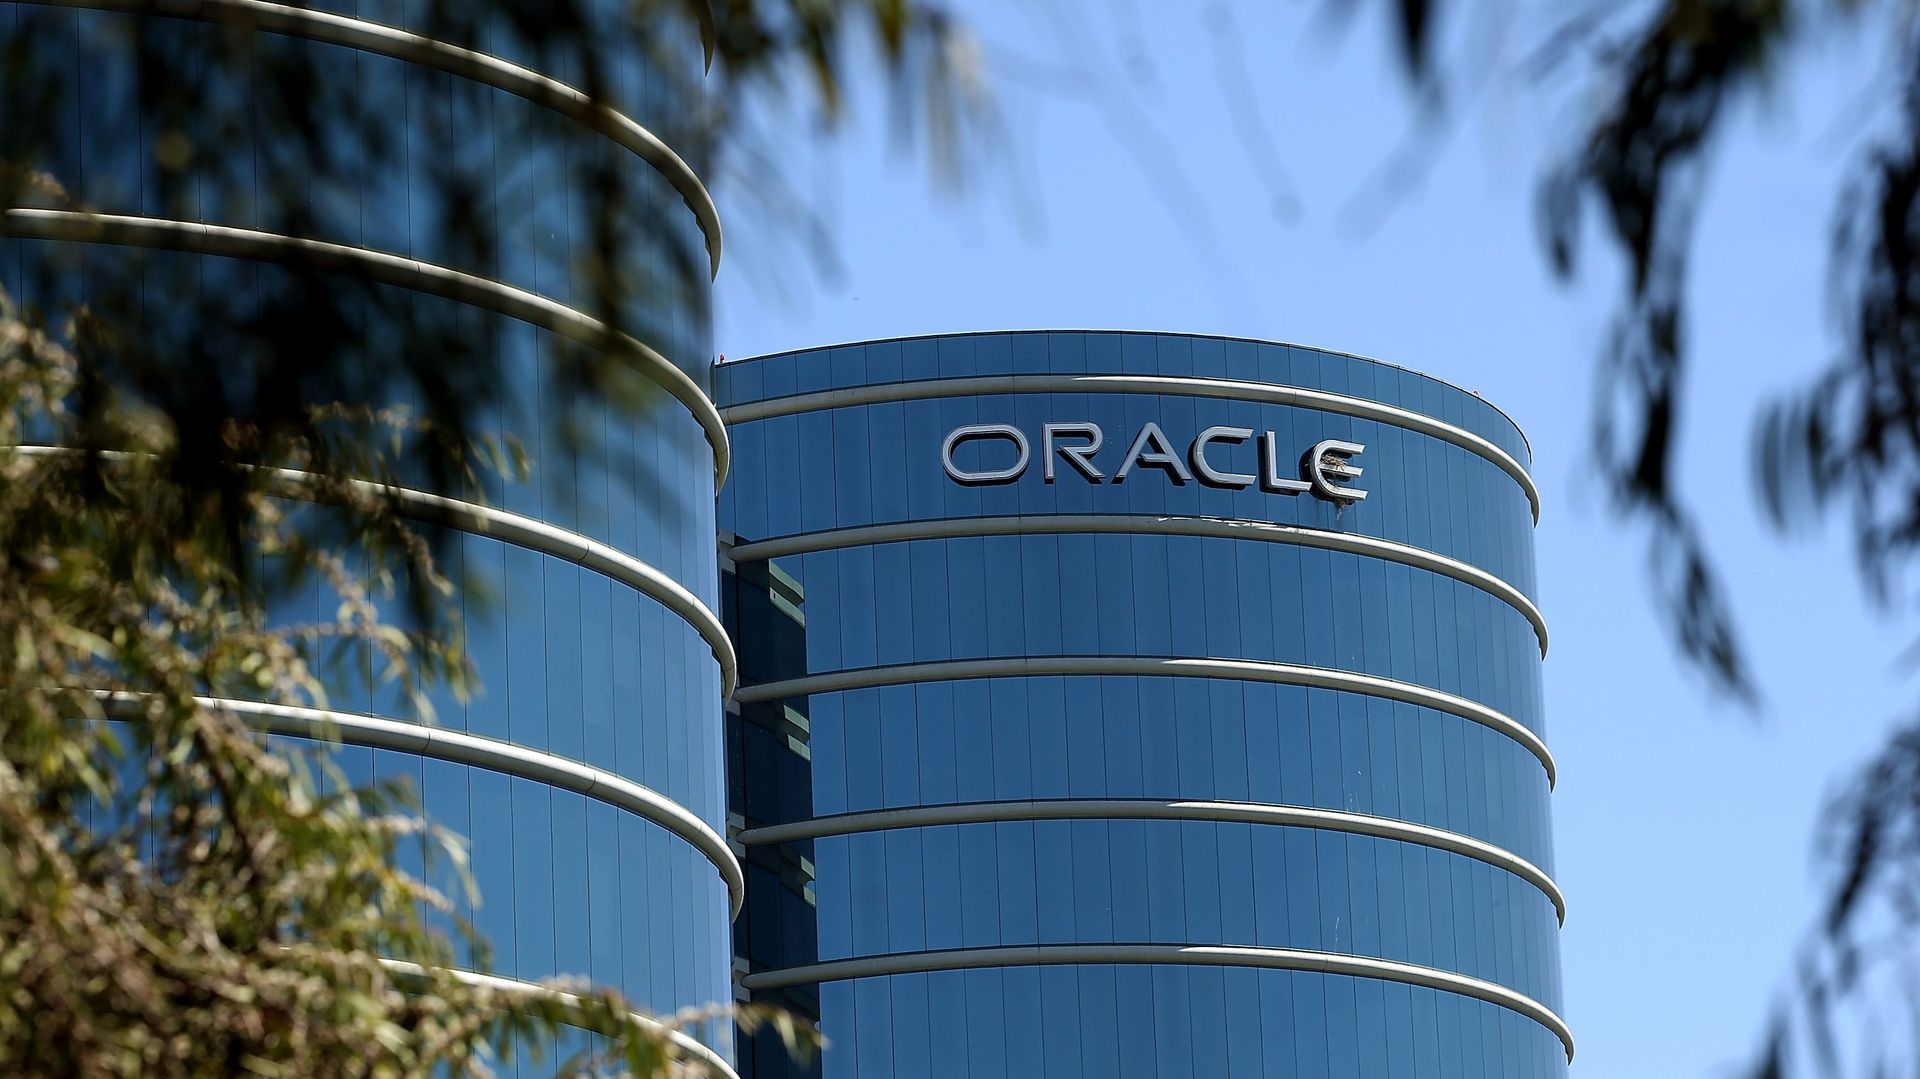 Vente de TikTok aux USA : le Président Trump soutient une éventuelle offre d'Oracle